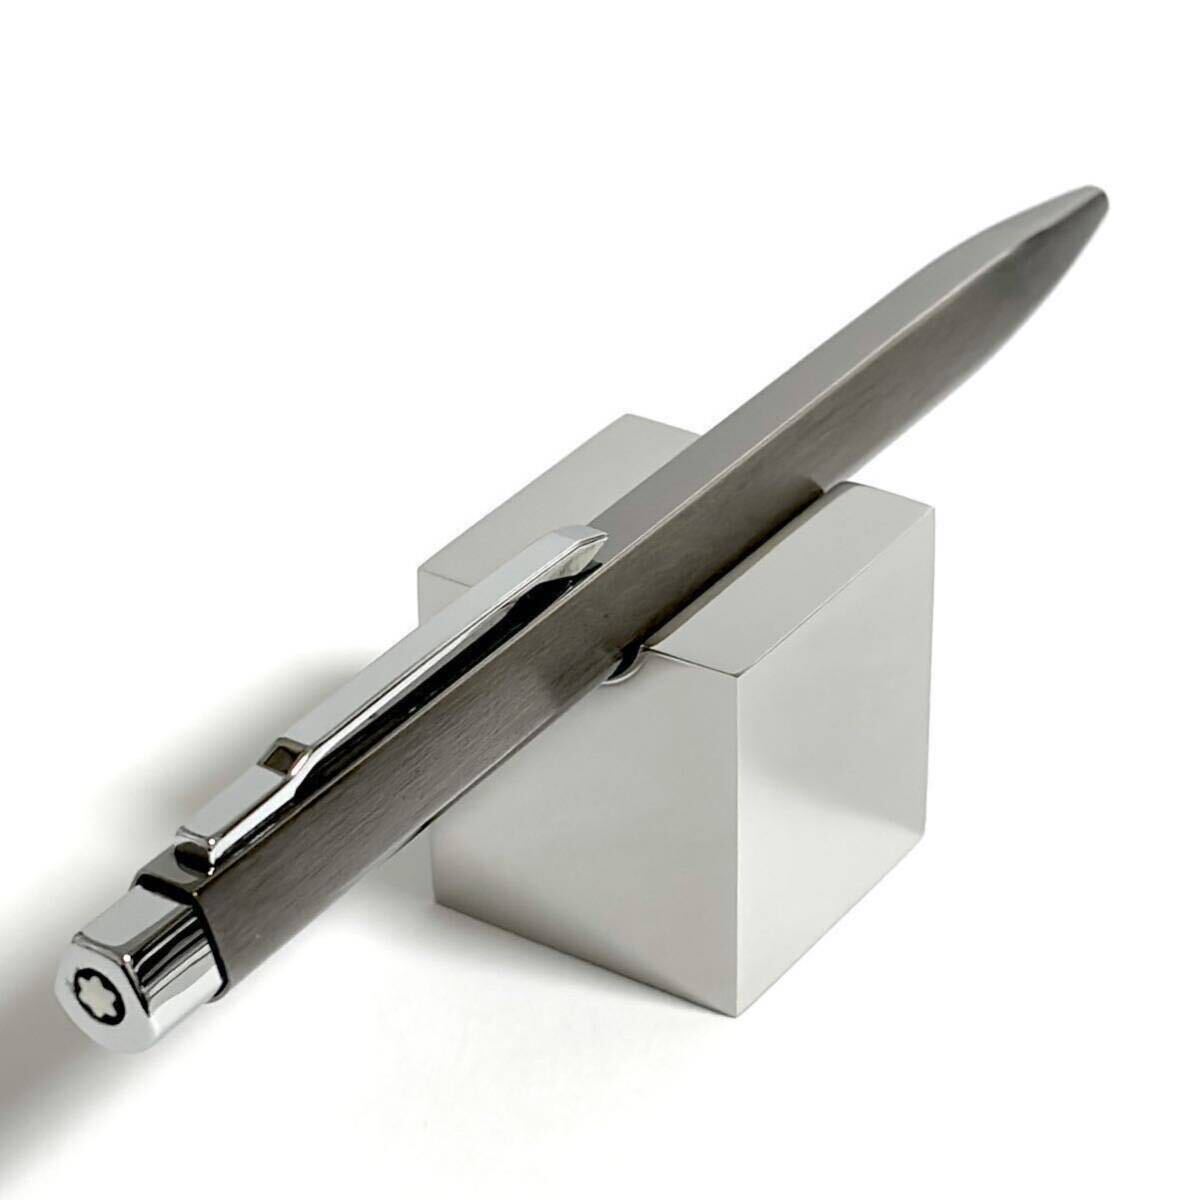 【美品】モンブラン レオナルド ボールペン No.20220 スタニウム仕上 / montblanc Leonard ballpoint pen stanium plate